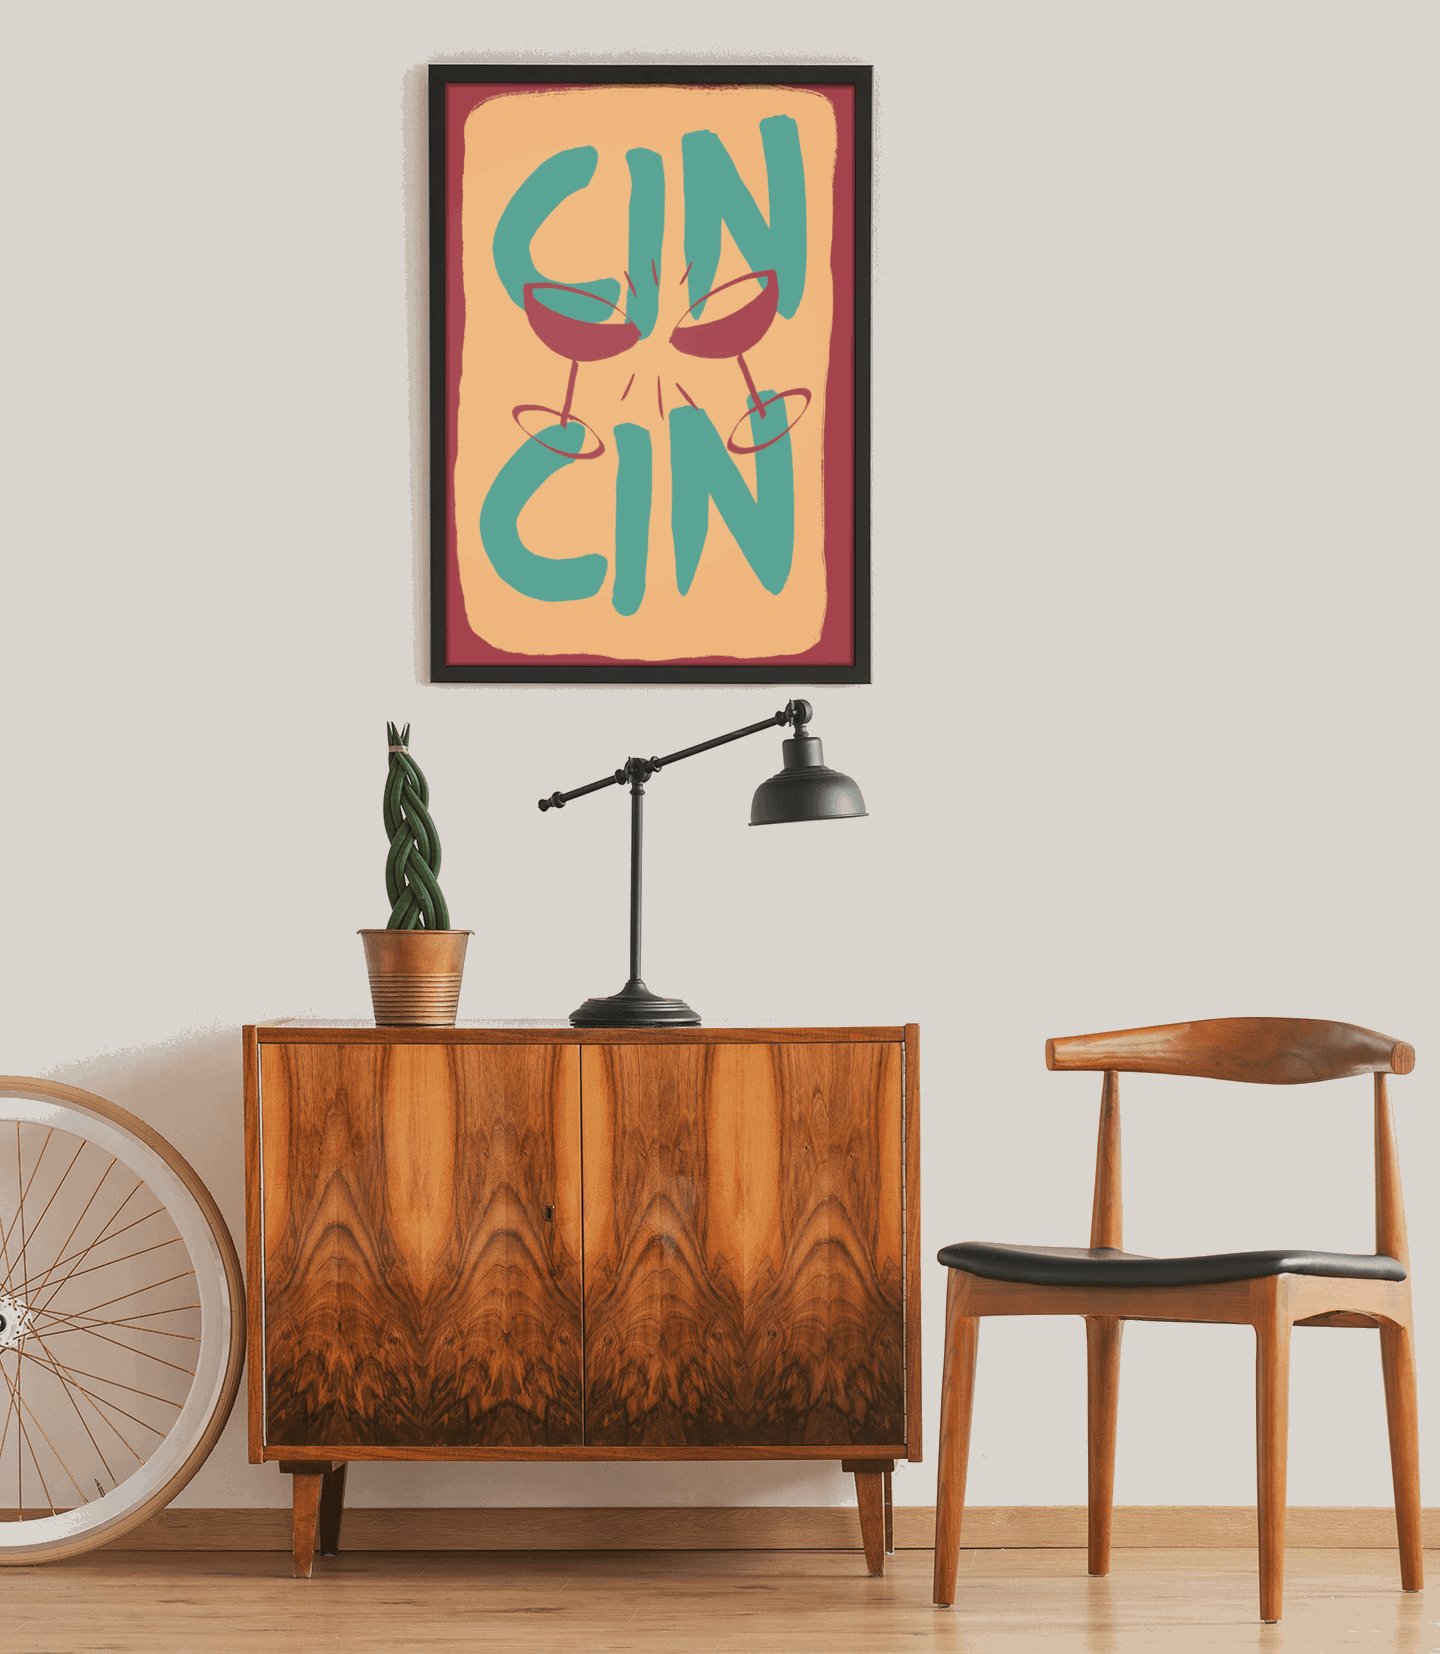 Cin Cin - Poster